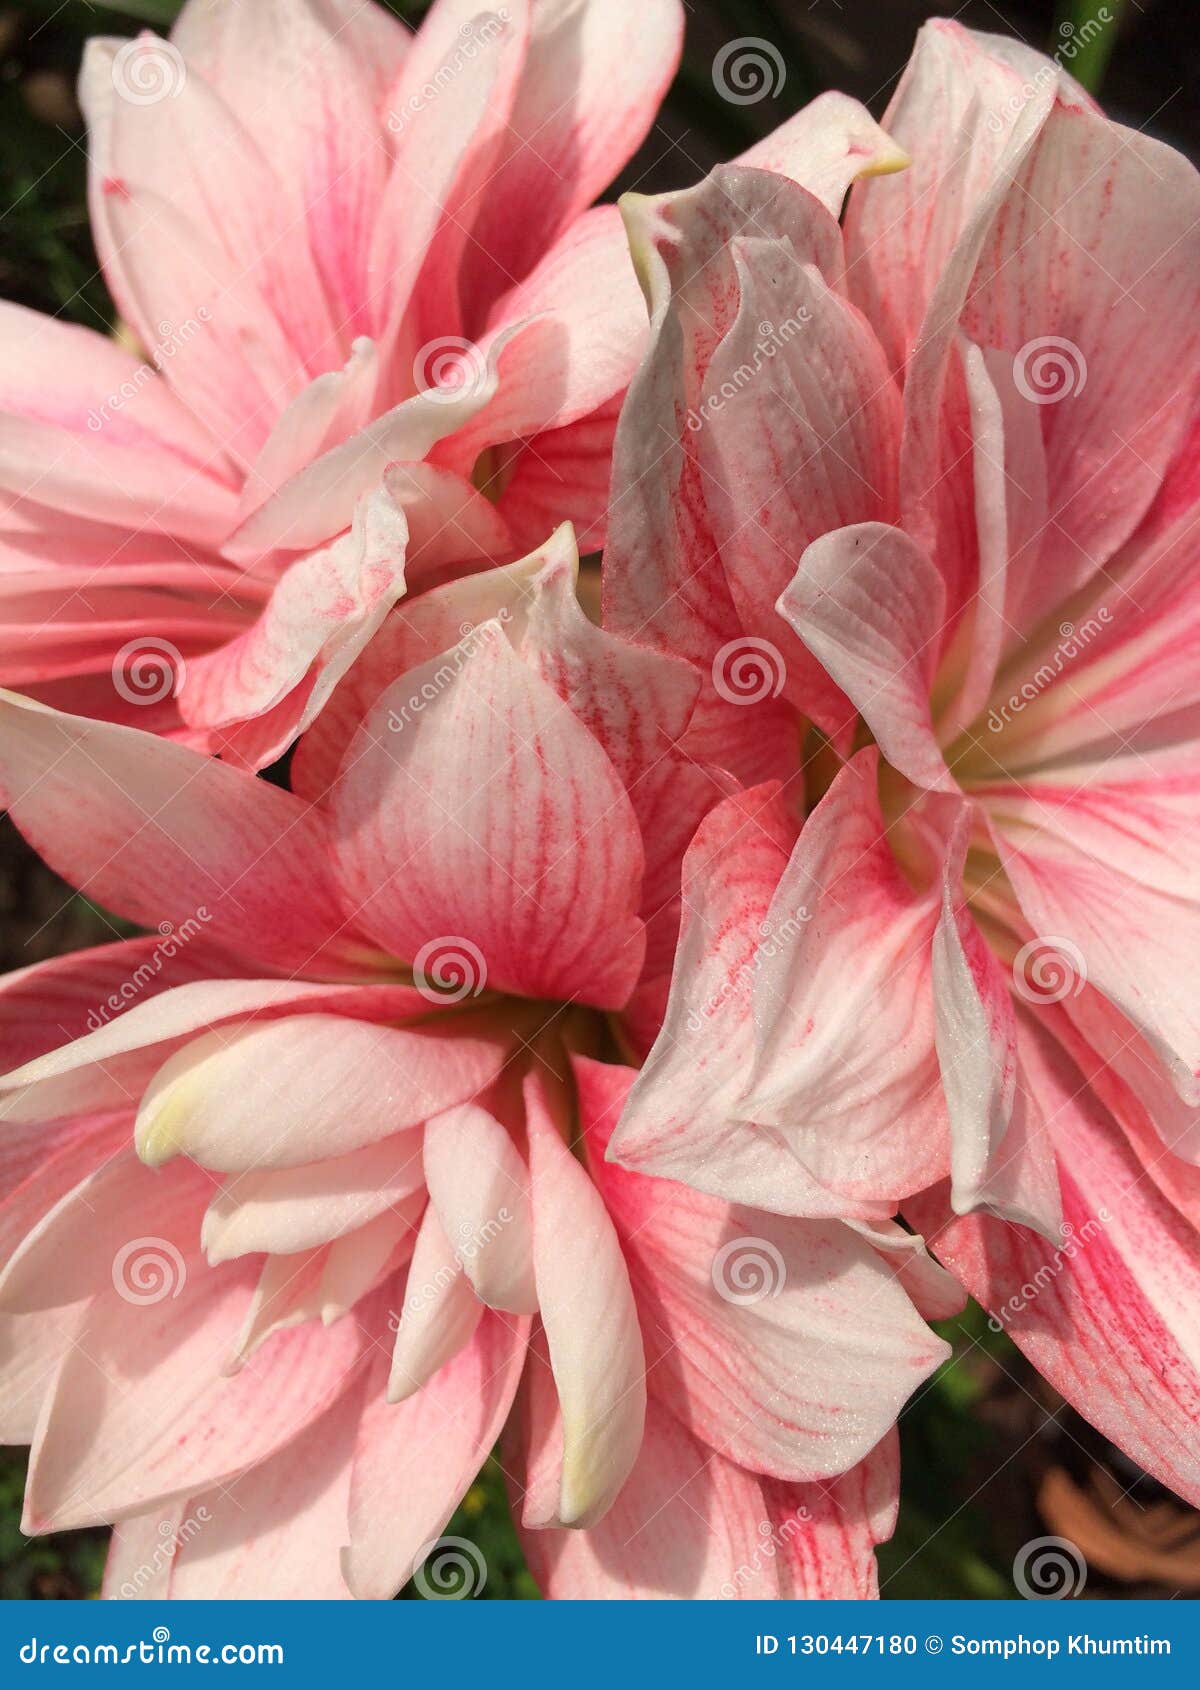 Background Pink Amaryllis Flowers Stock Photo Image Of Flower Mixed 130447180